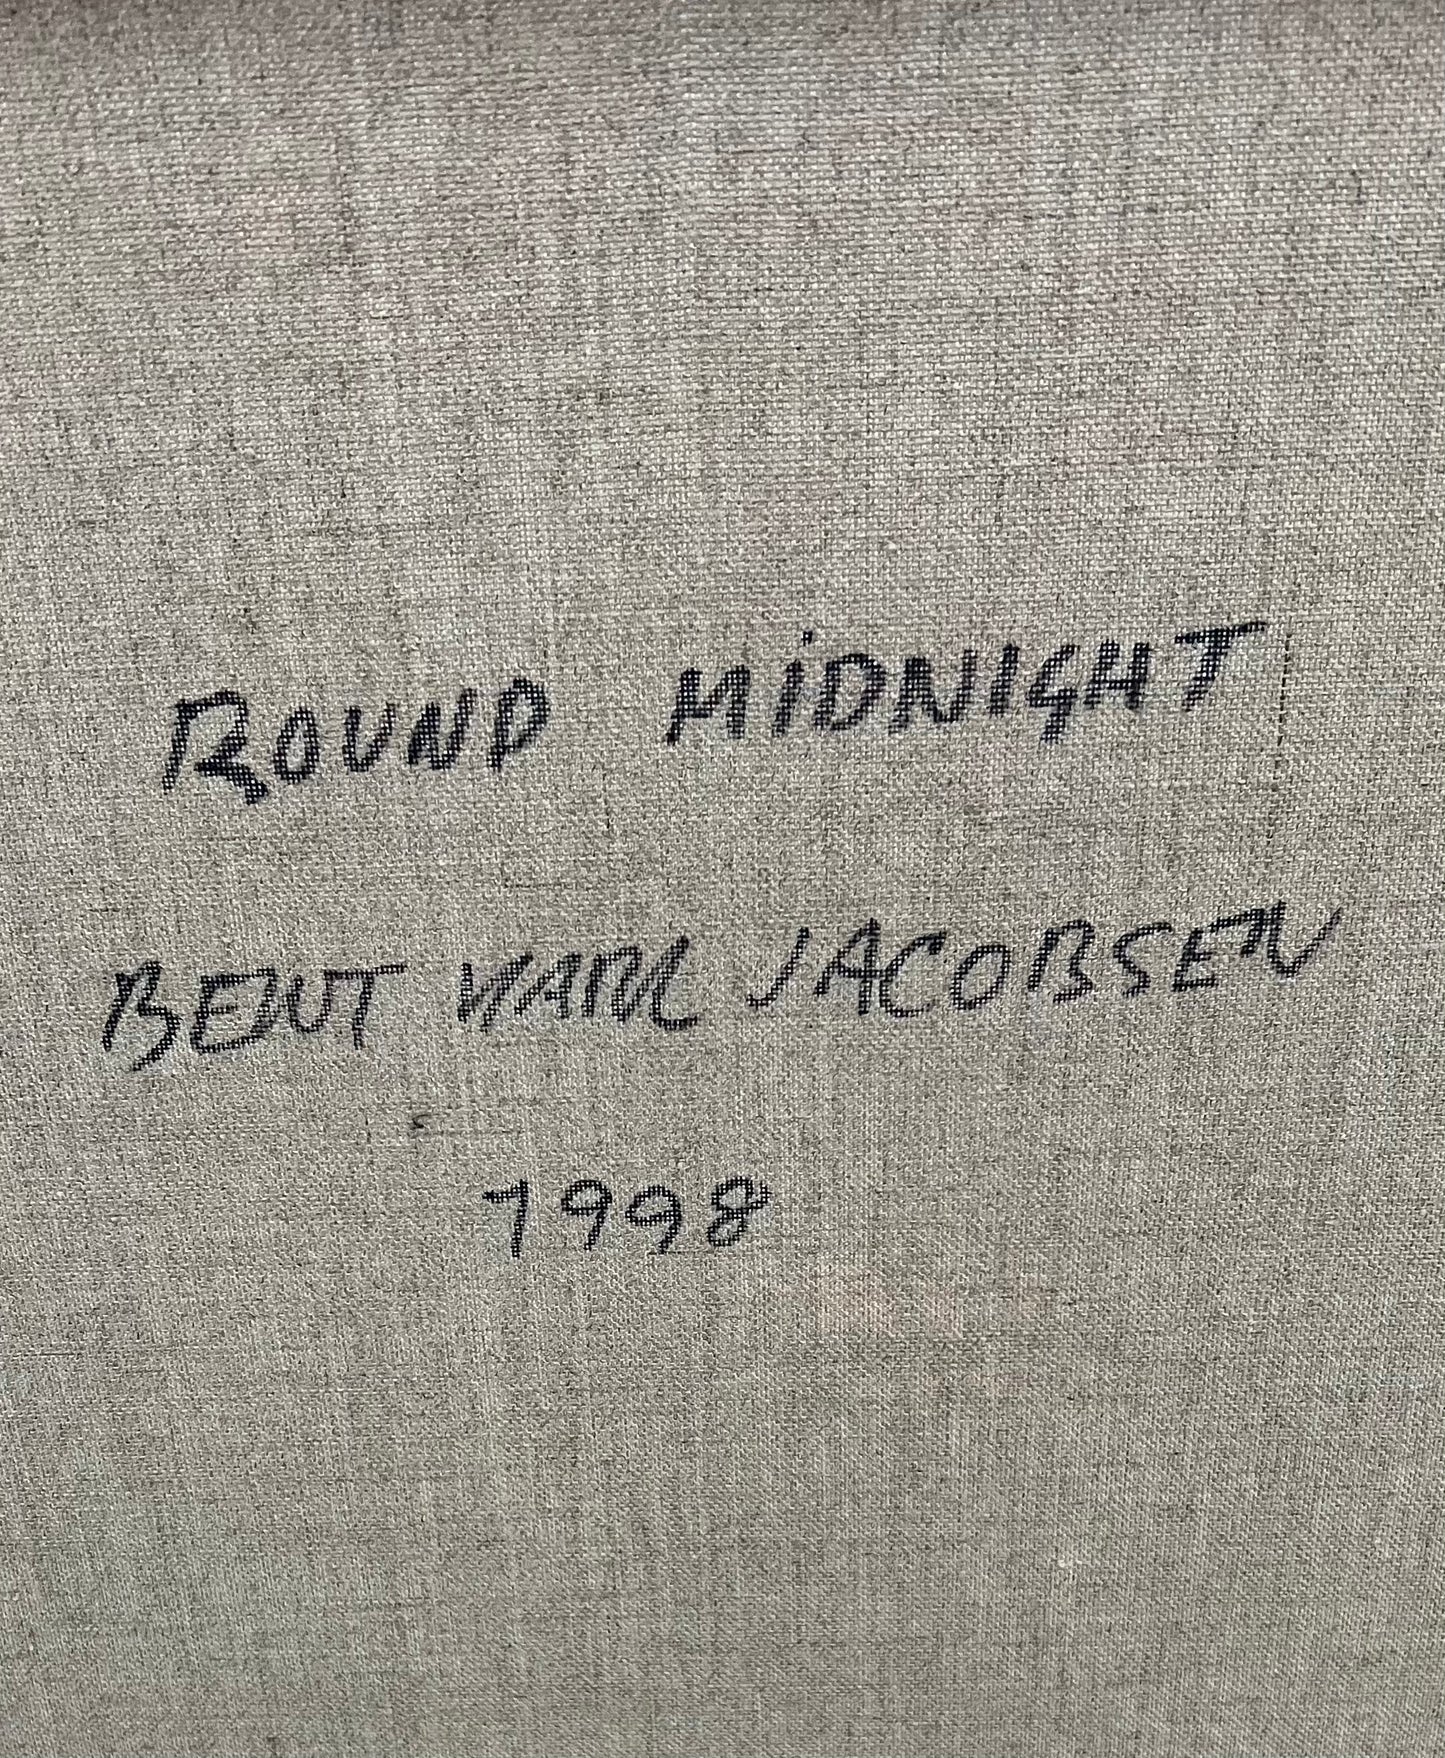 Bent Karl Jacobsen. “Round midnight”, 1998